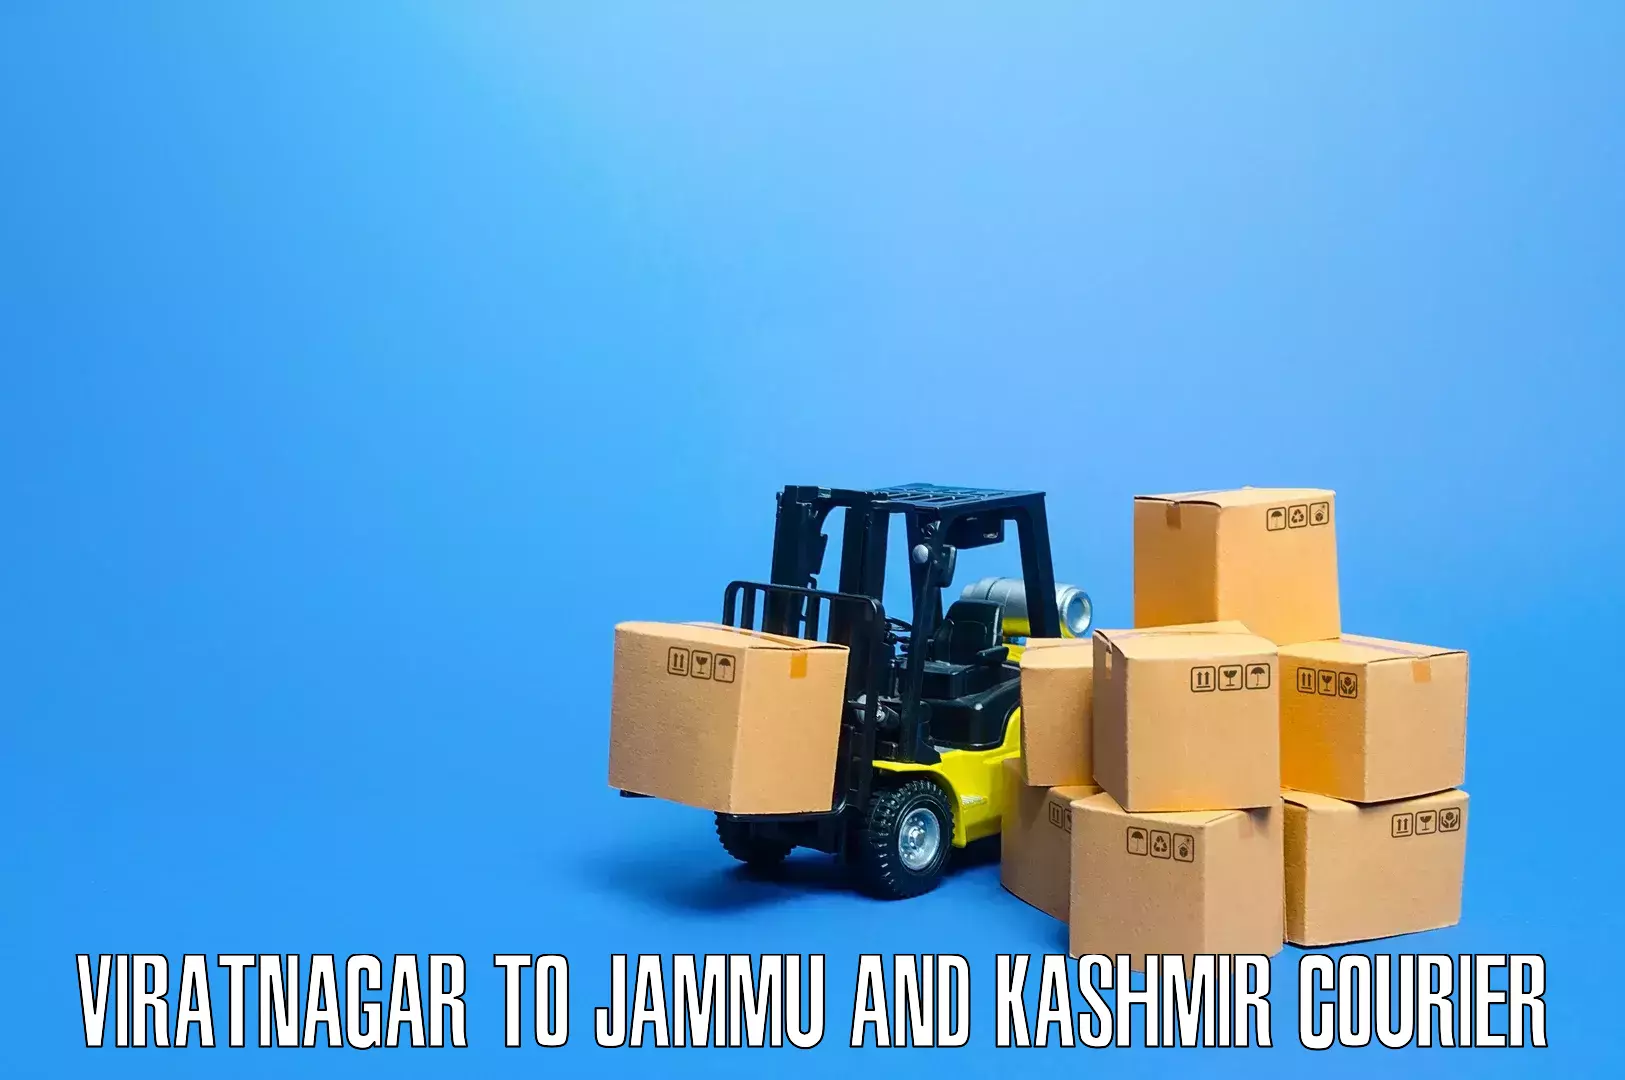 Furniture transport solutions Viratnagar to Kishtwar